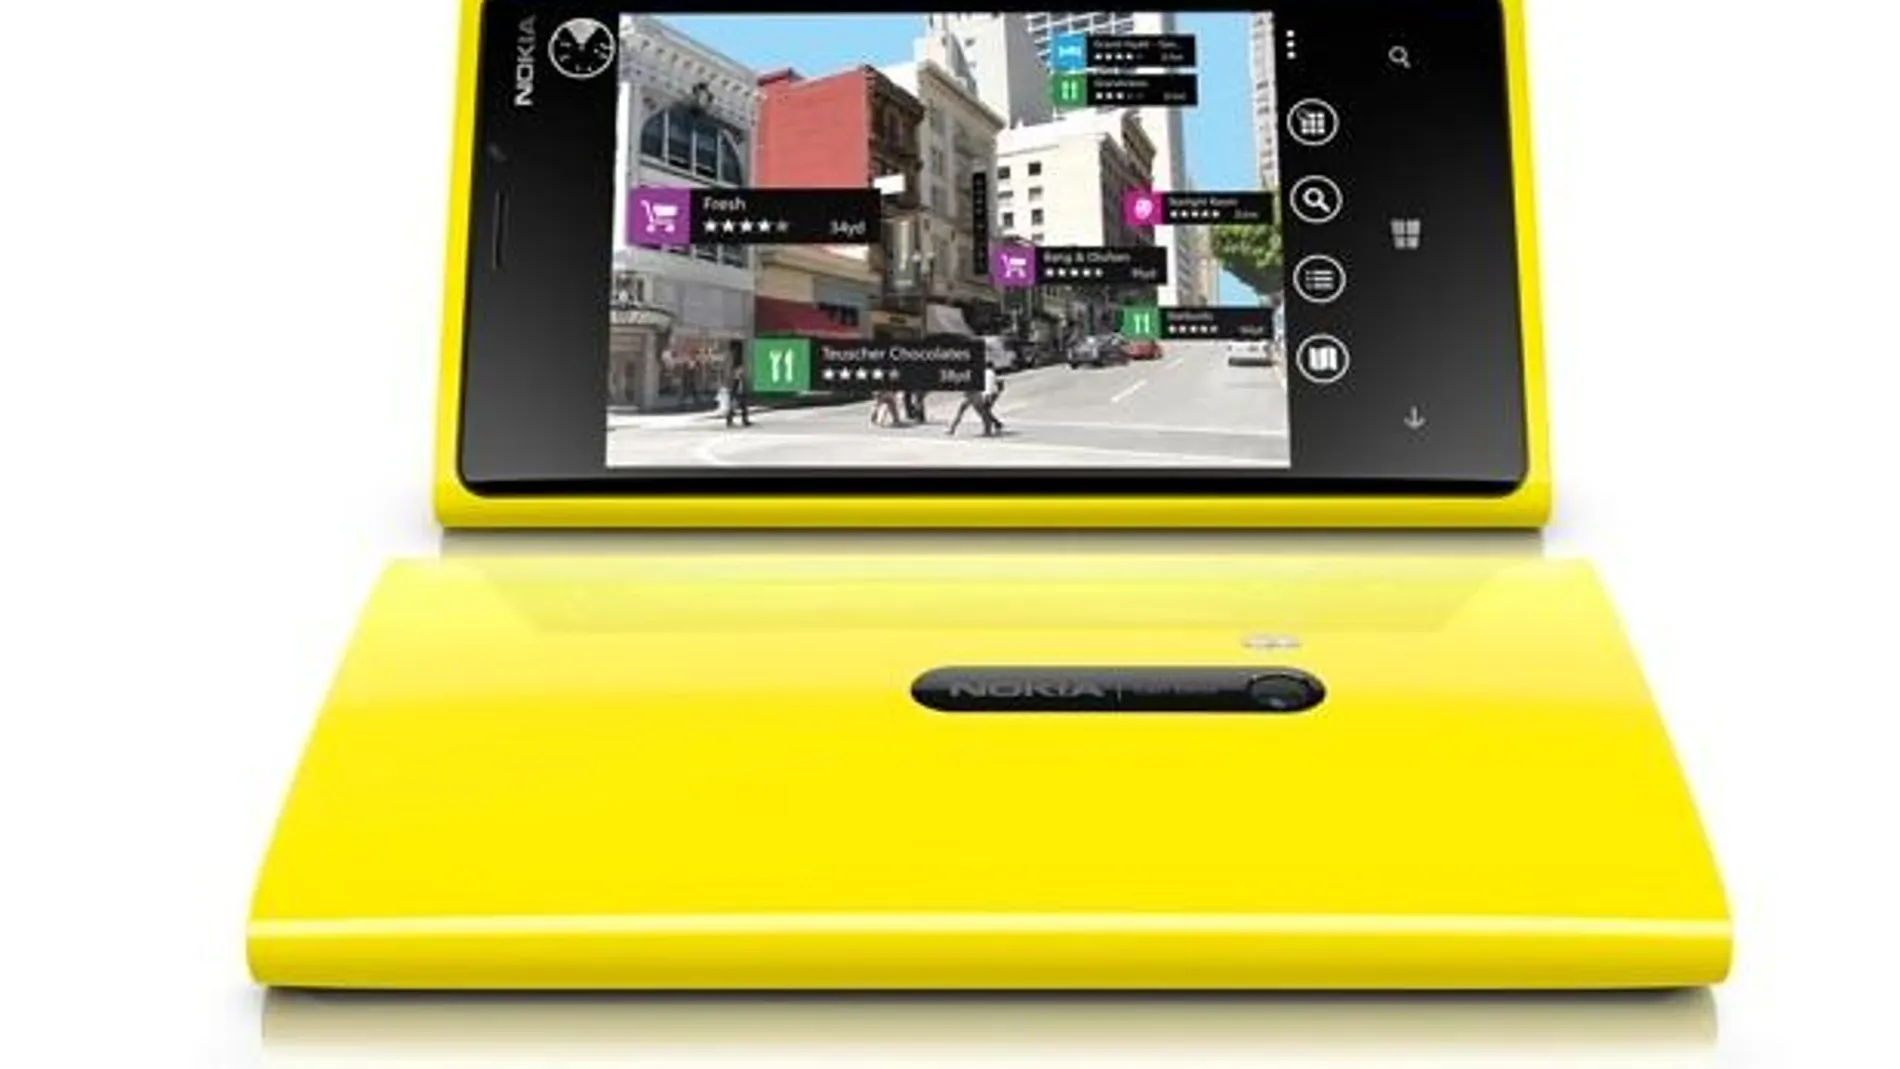 Nokia Lumia 920 arrebata al iPhone el título de mejor pantalla